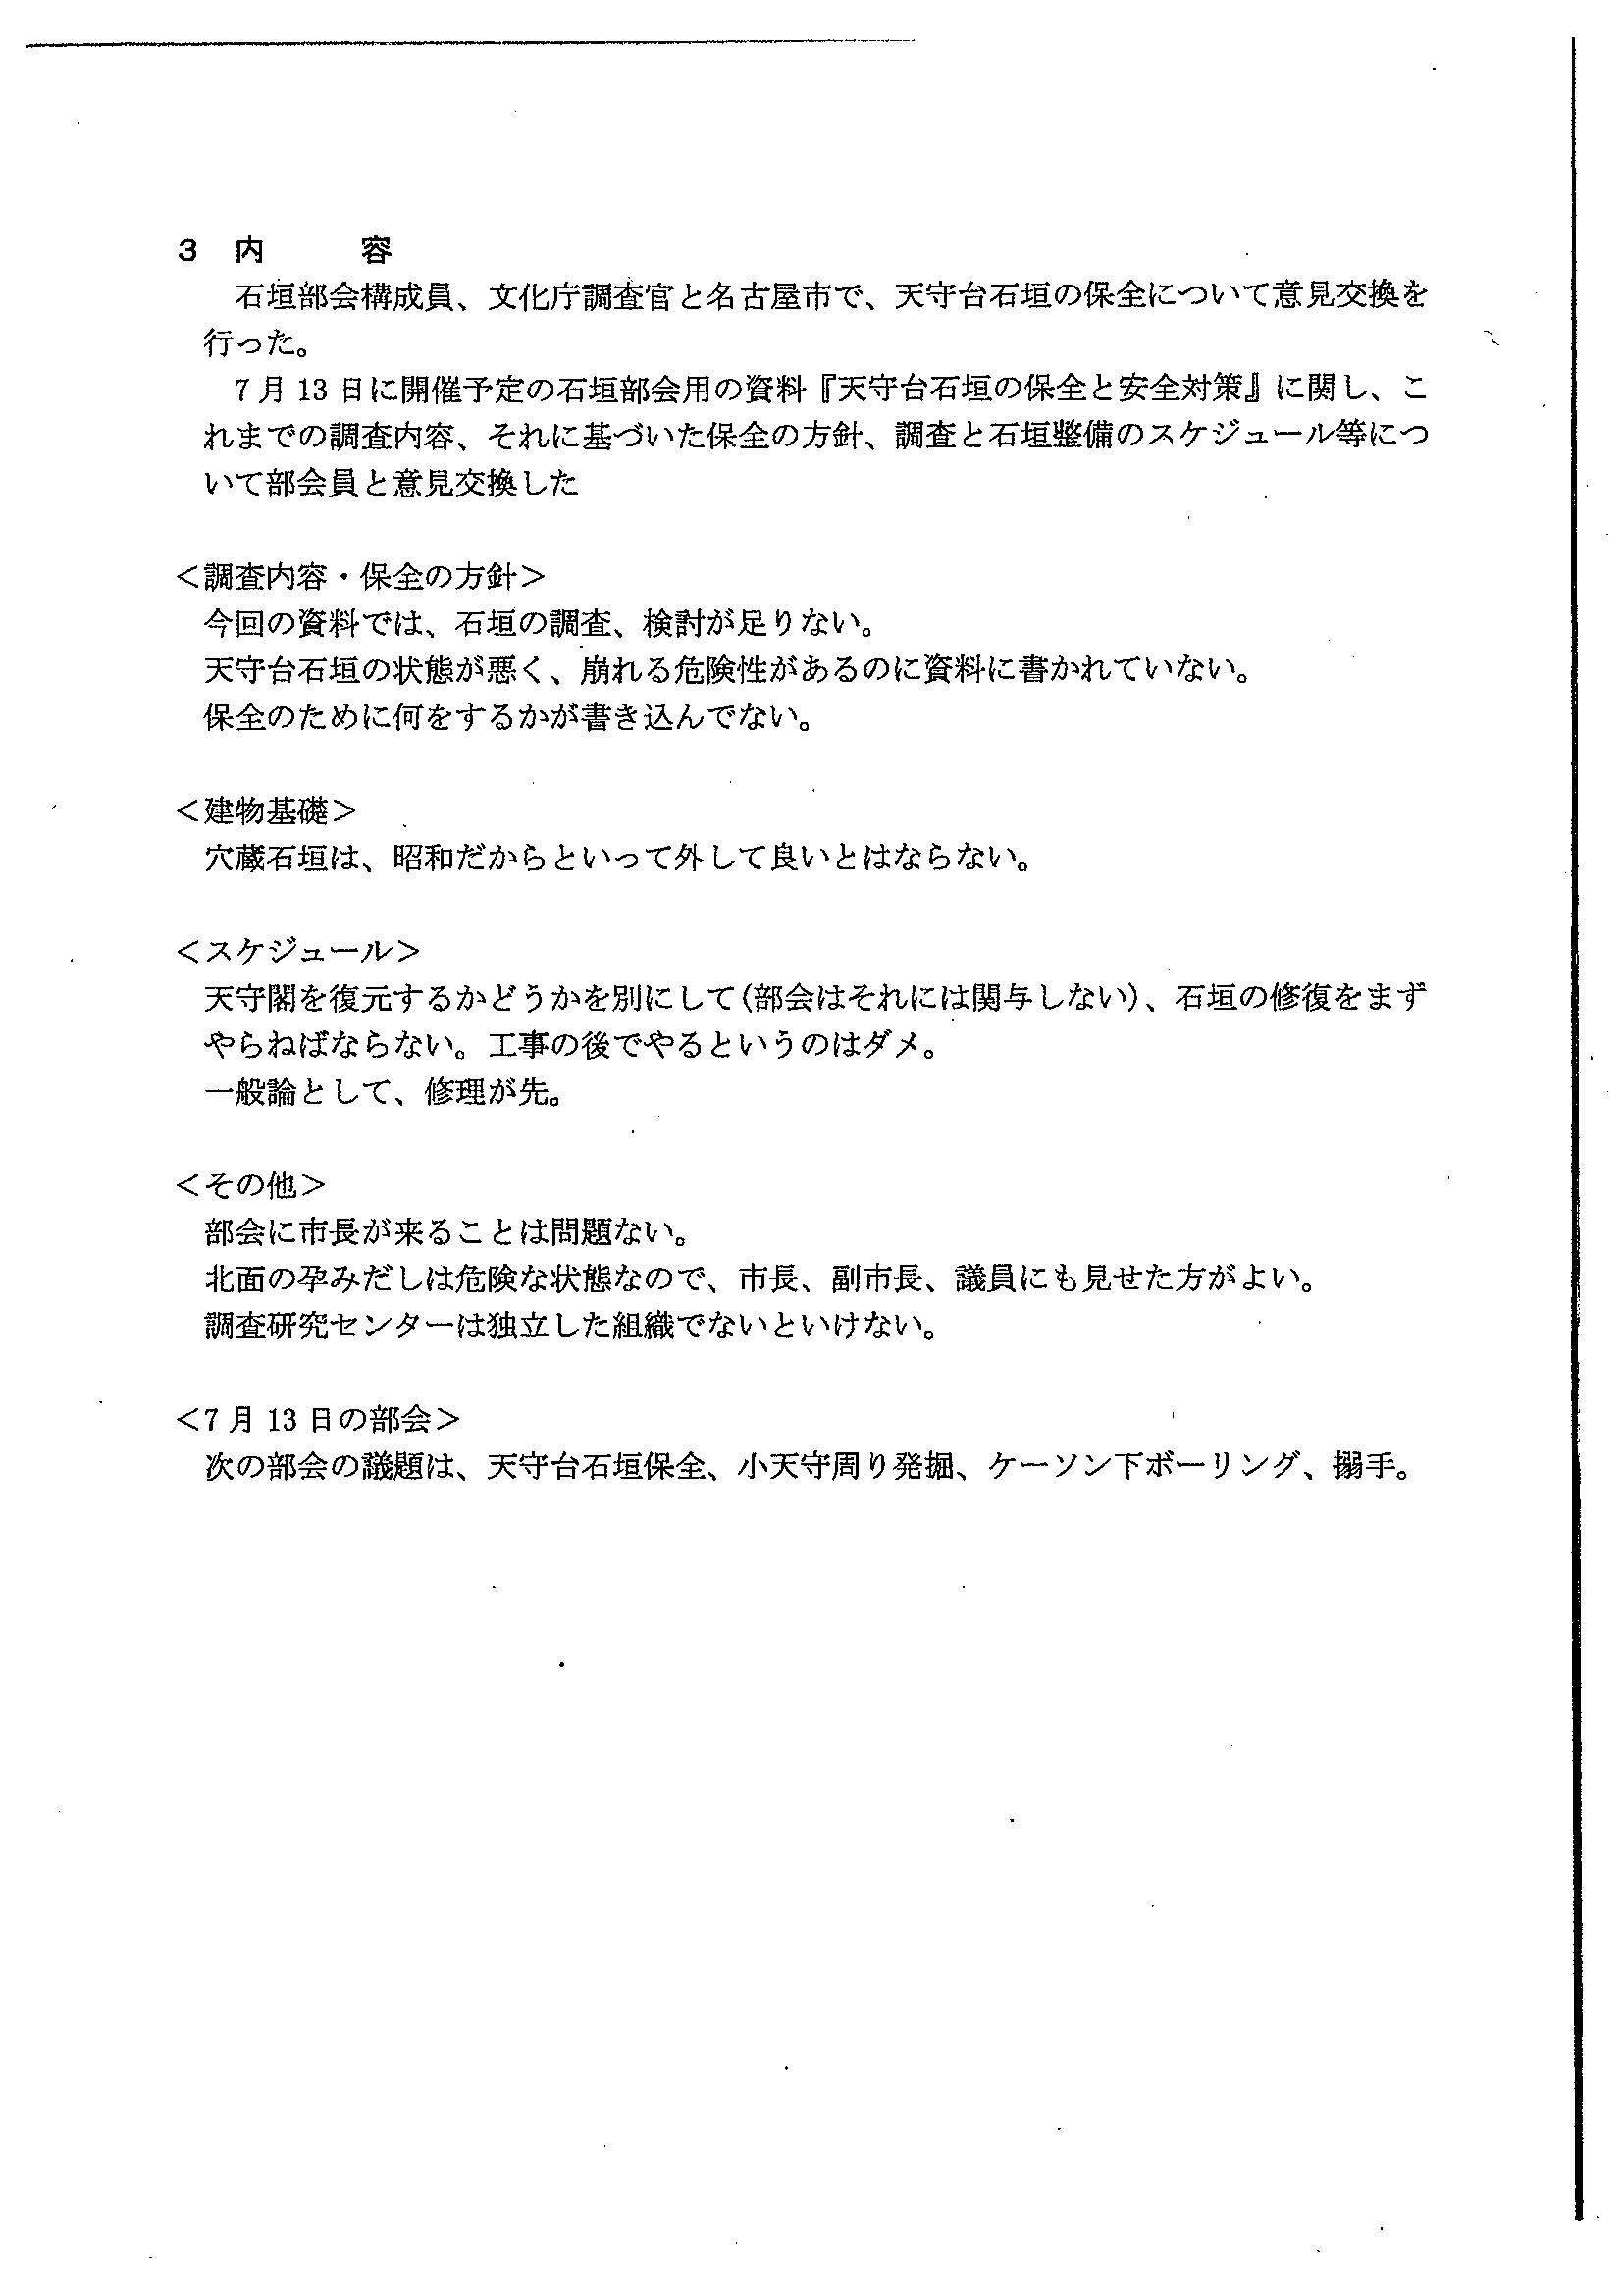 18/7/9石垣部会と名古屋城事務所、文化庁が東京で打合せ「石垣の修復をまずやらねばならない。工事の後でやるというのはダメ」_d0011701_14243405.jpg